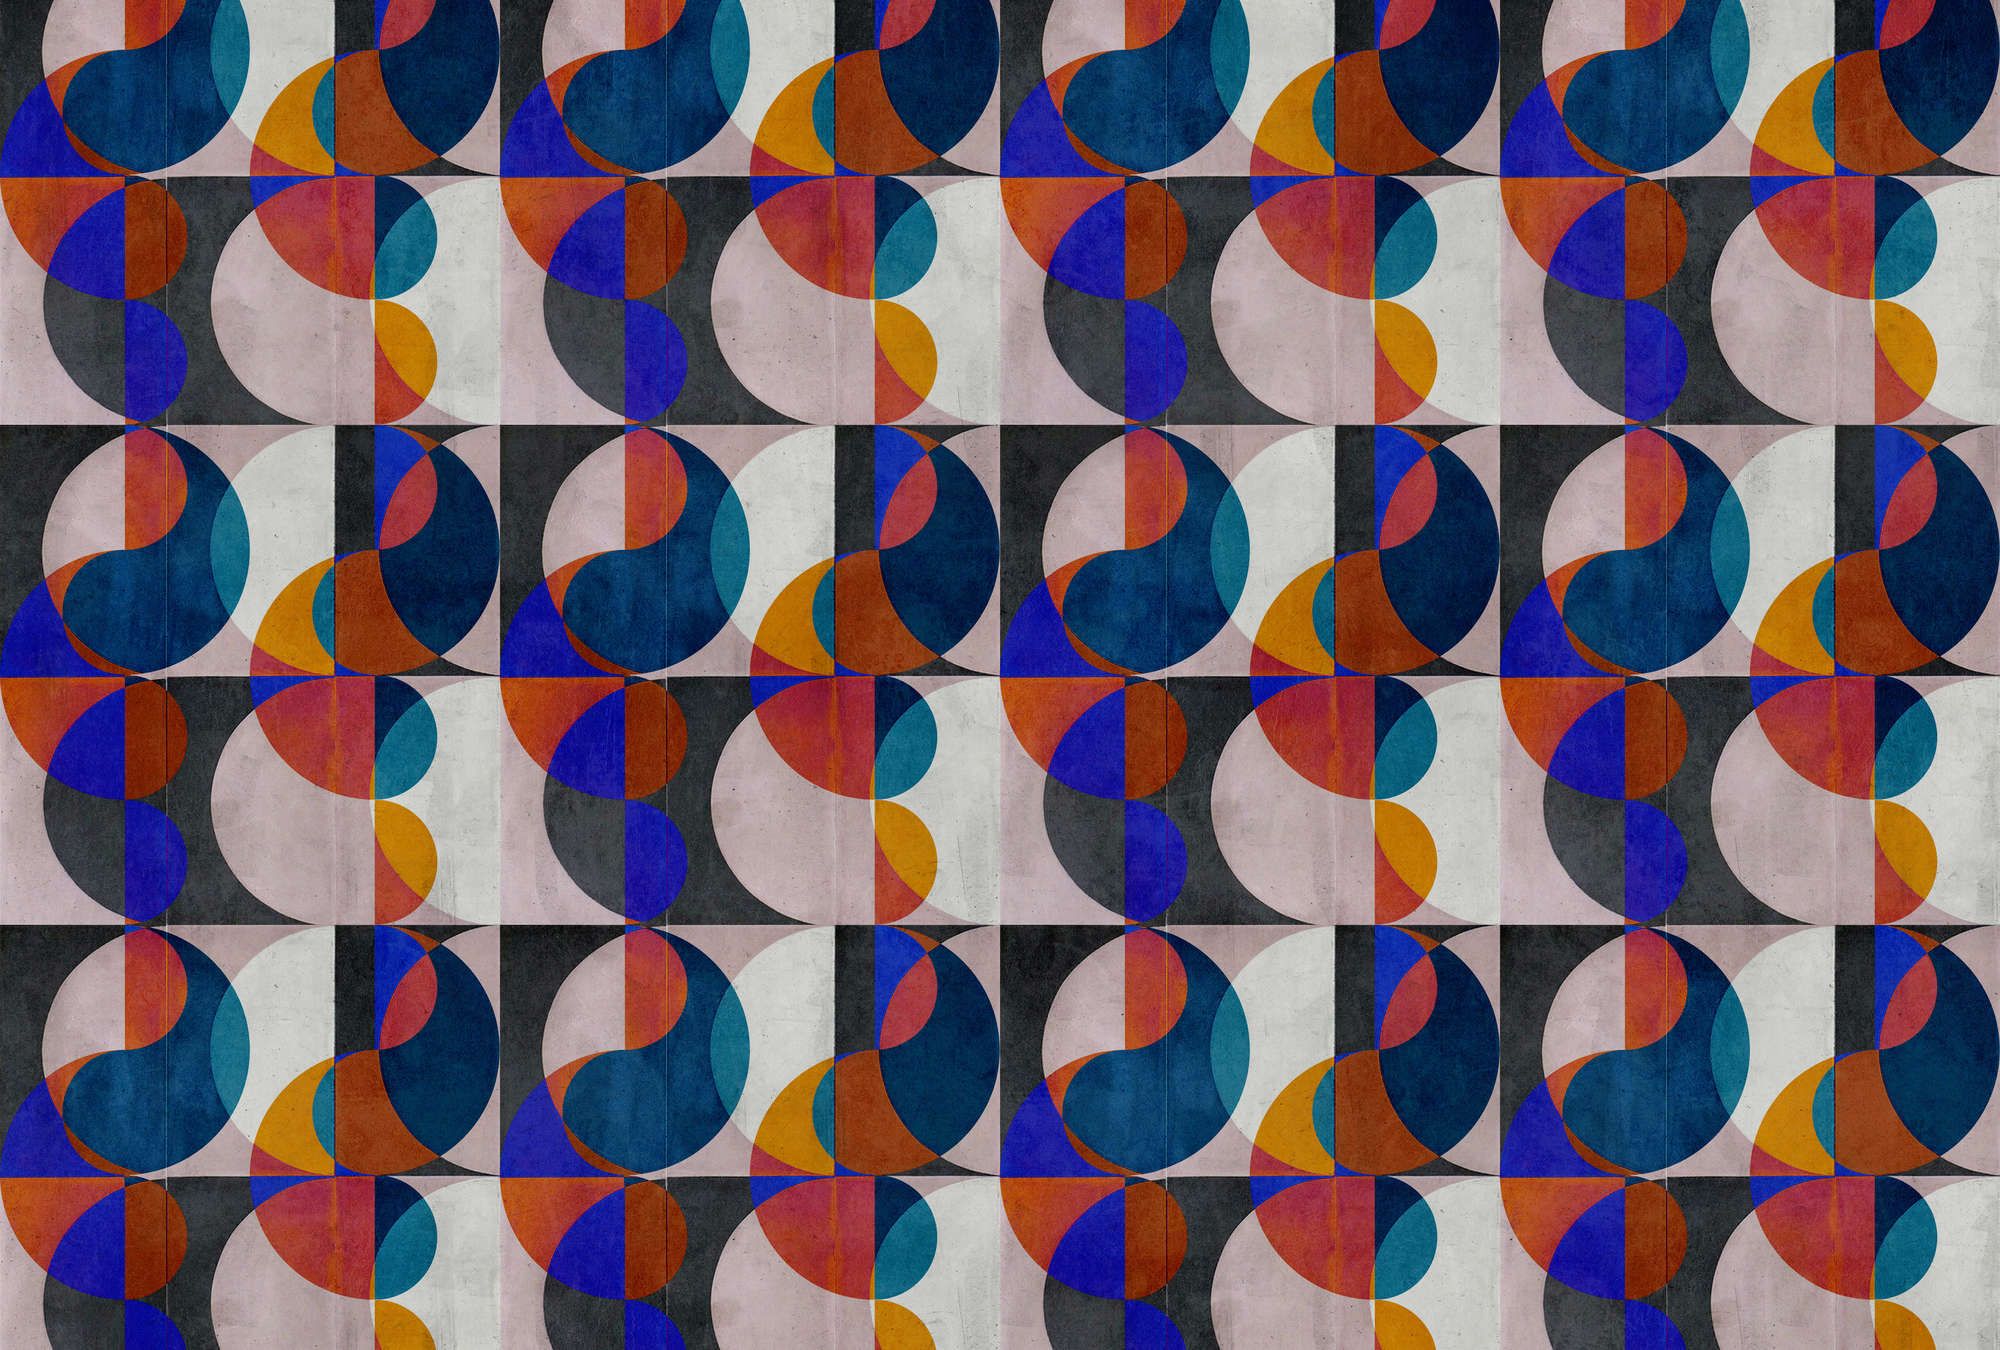             Digital behang »mia« - abstract retro patroon op betonpleistertextuur - kleurrijk | licht structuurvlies
        